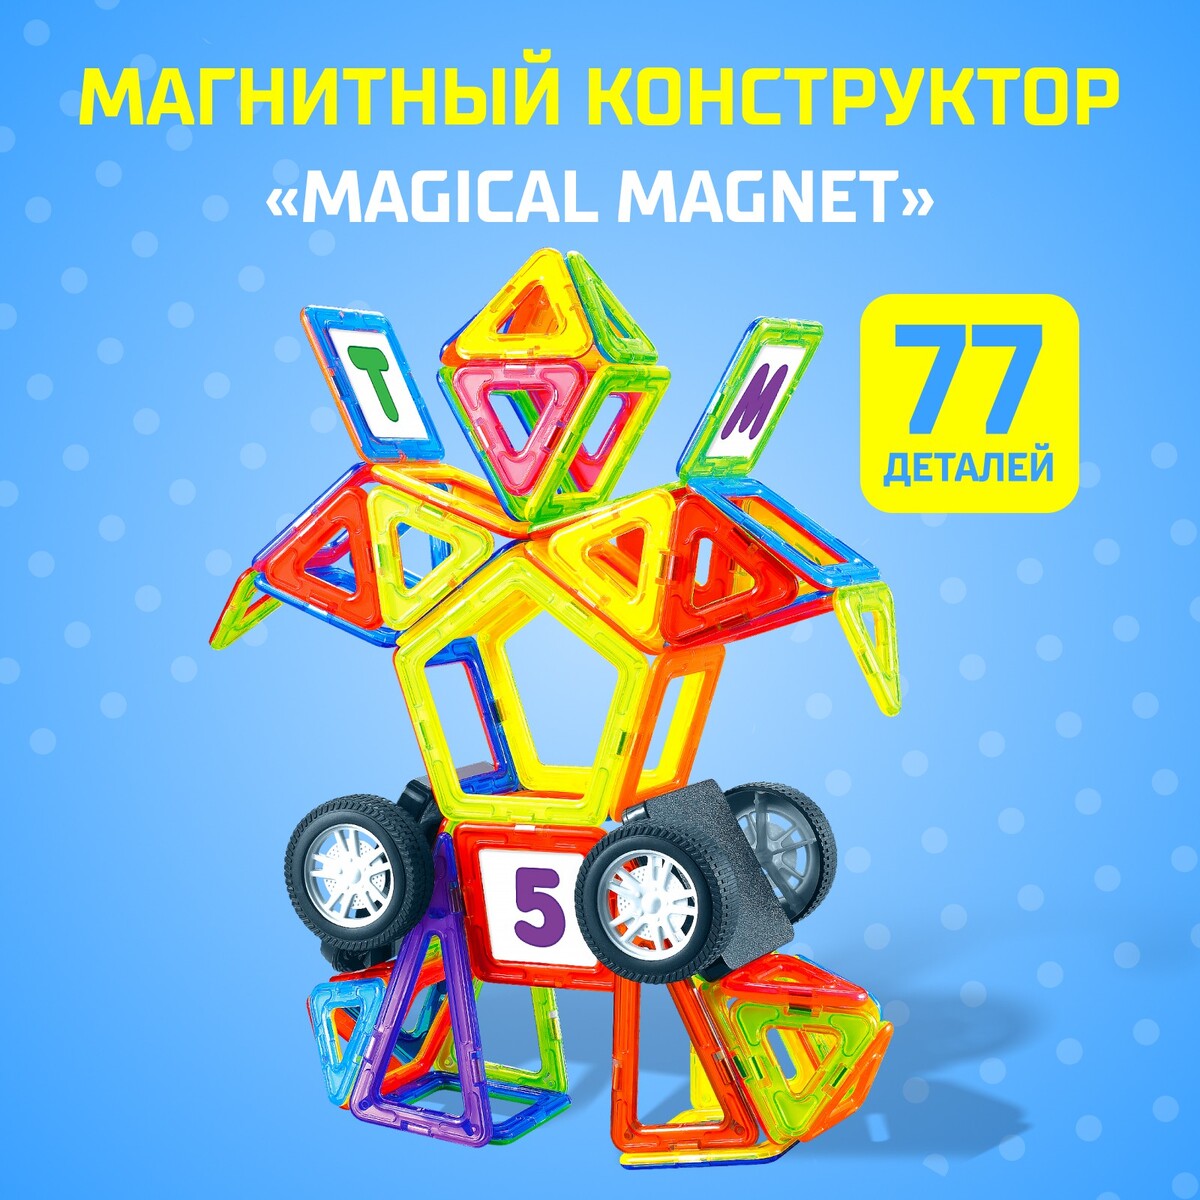 Магнитный конструктор magical magnet, 77 деталей, детали матовые магнитный конструктор magical magnet 22 детали детали матовые